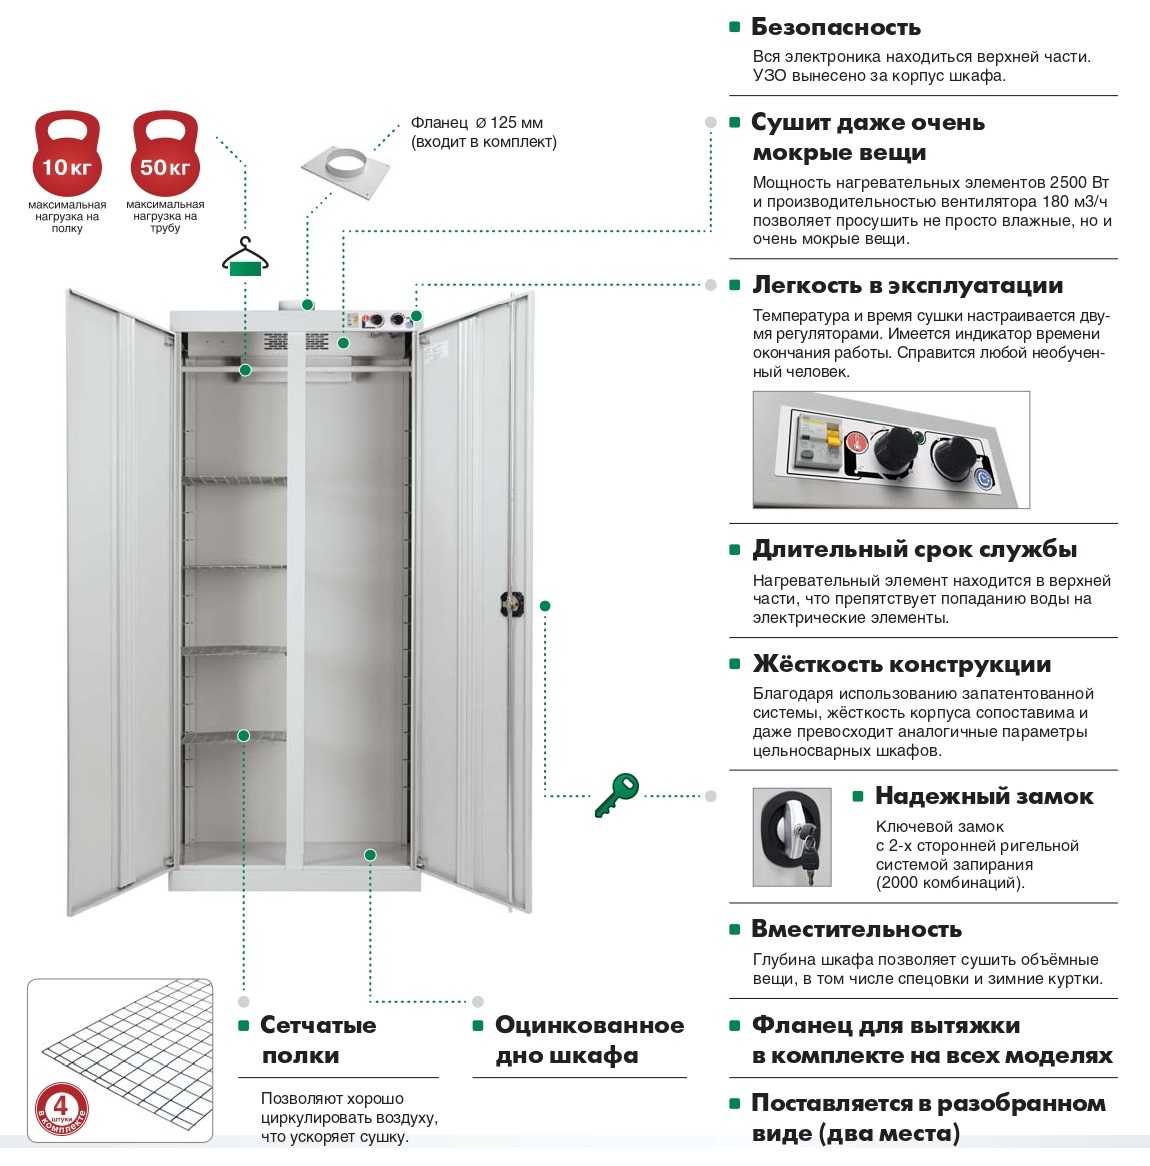 Система автоматического регулирования температуры сушильного шкафа